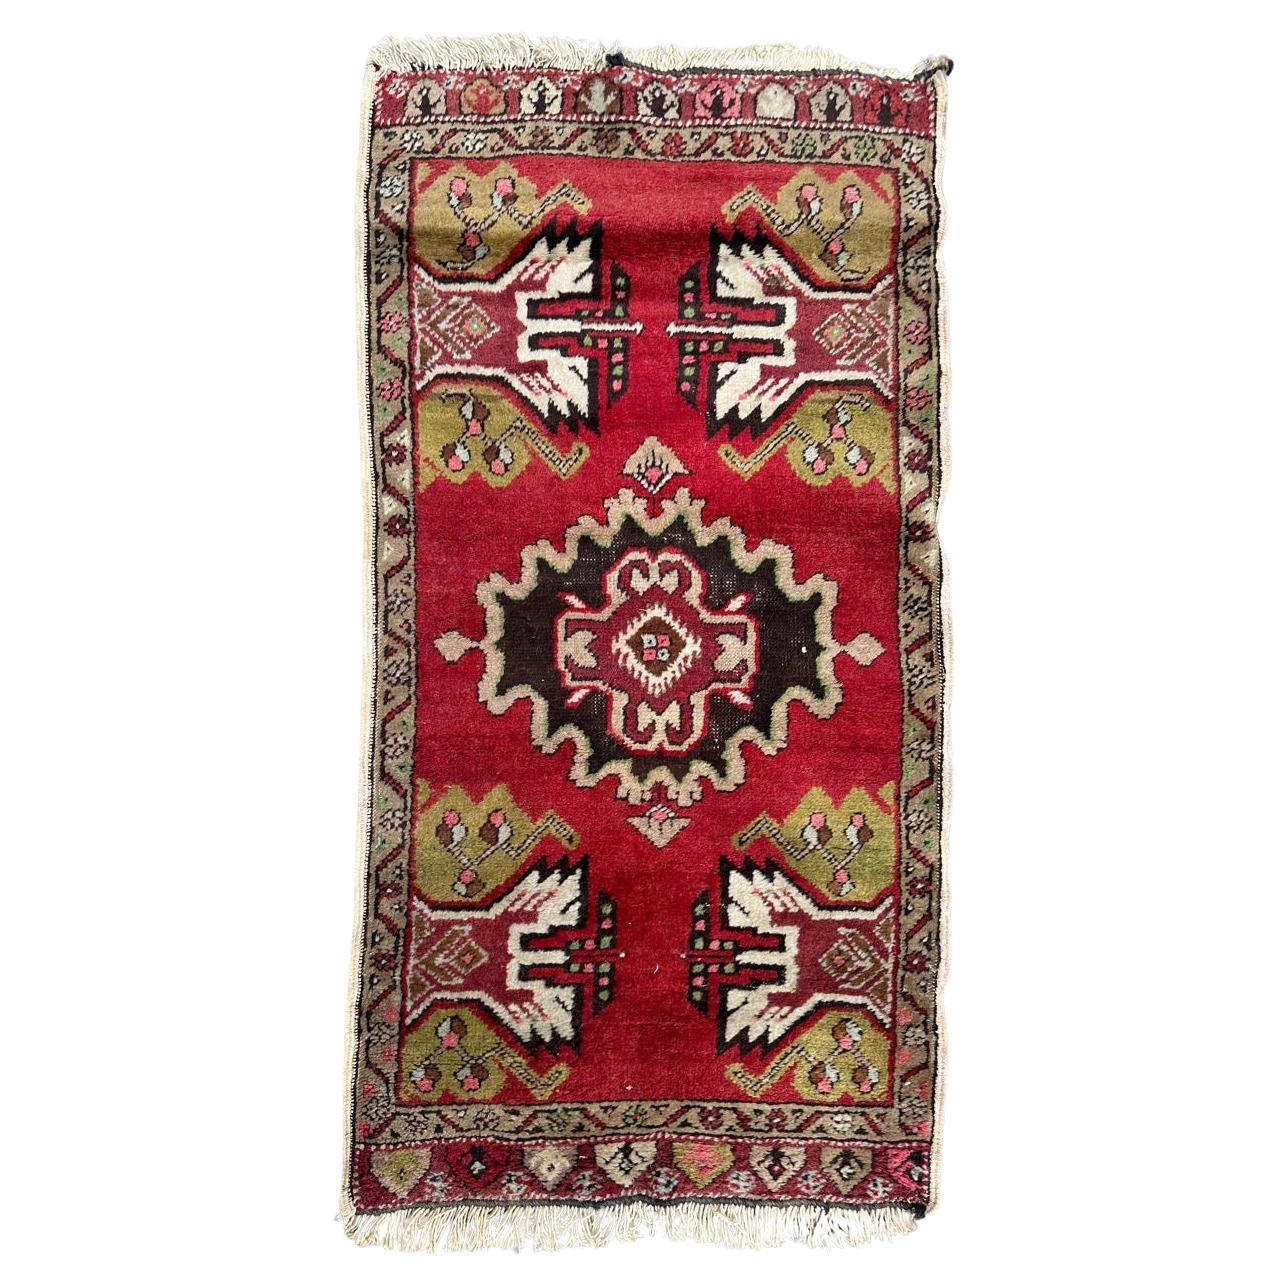 Petit tapis turc Yastik vintage